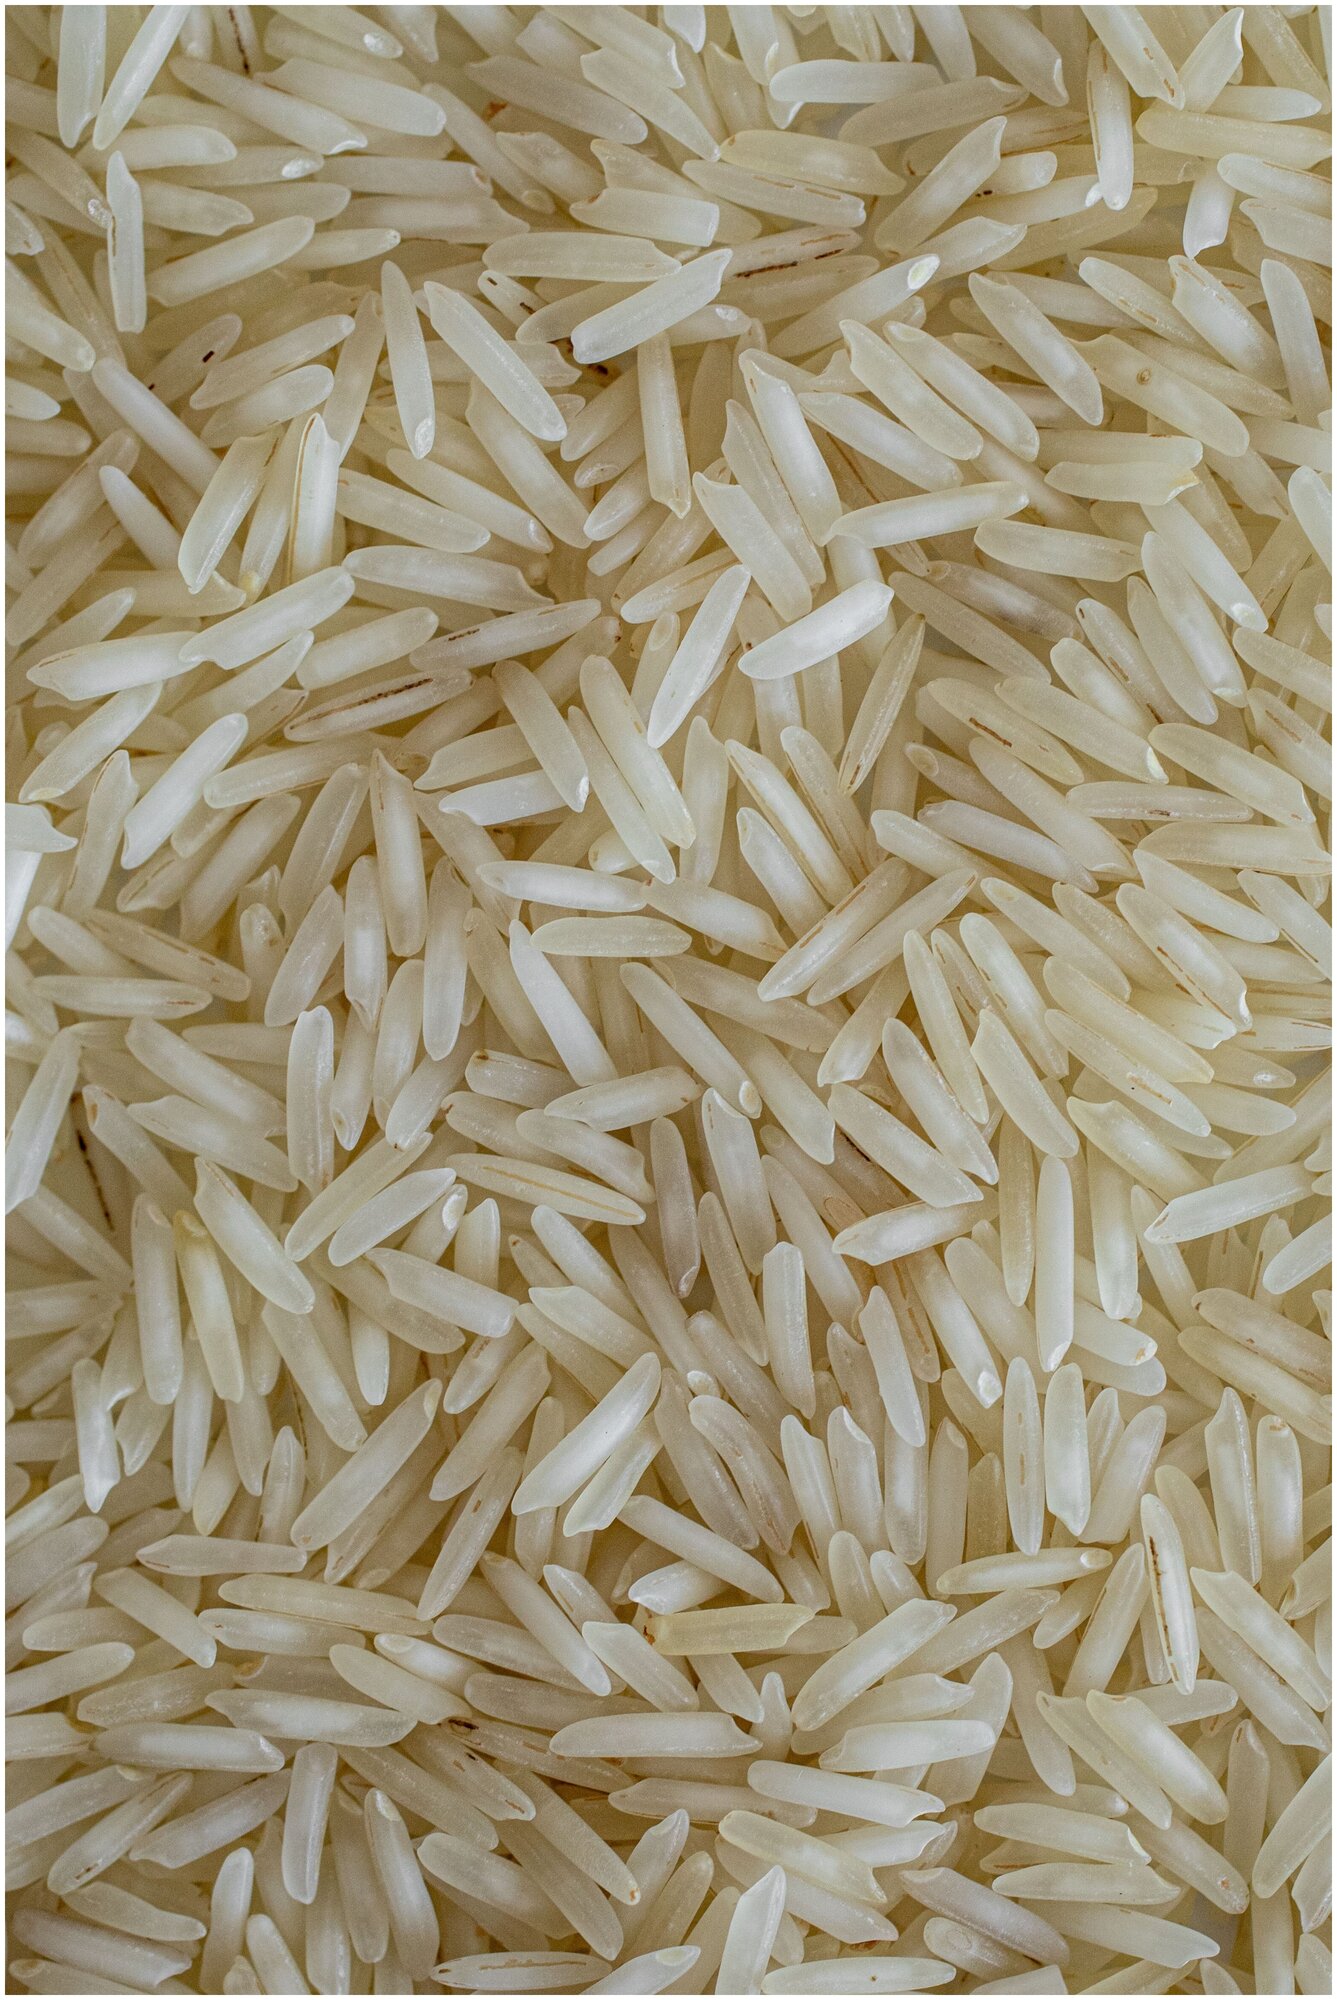 Рис басмати длиннозерный белый непропаренный Стим рис 1 кг - фотография № 8